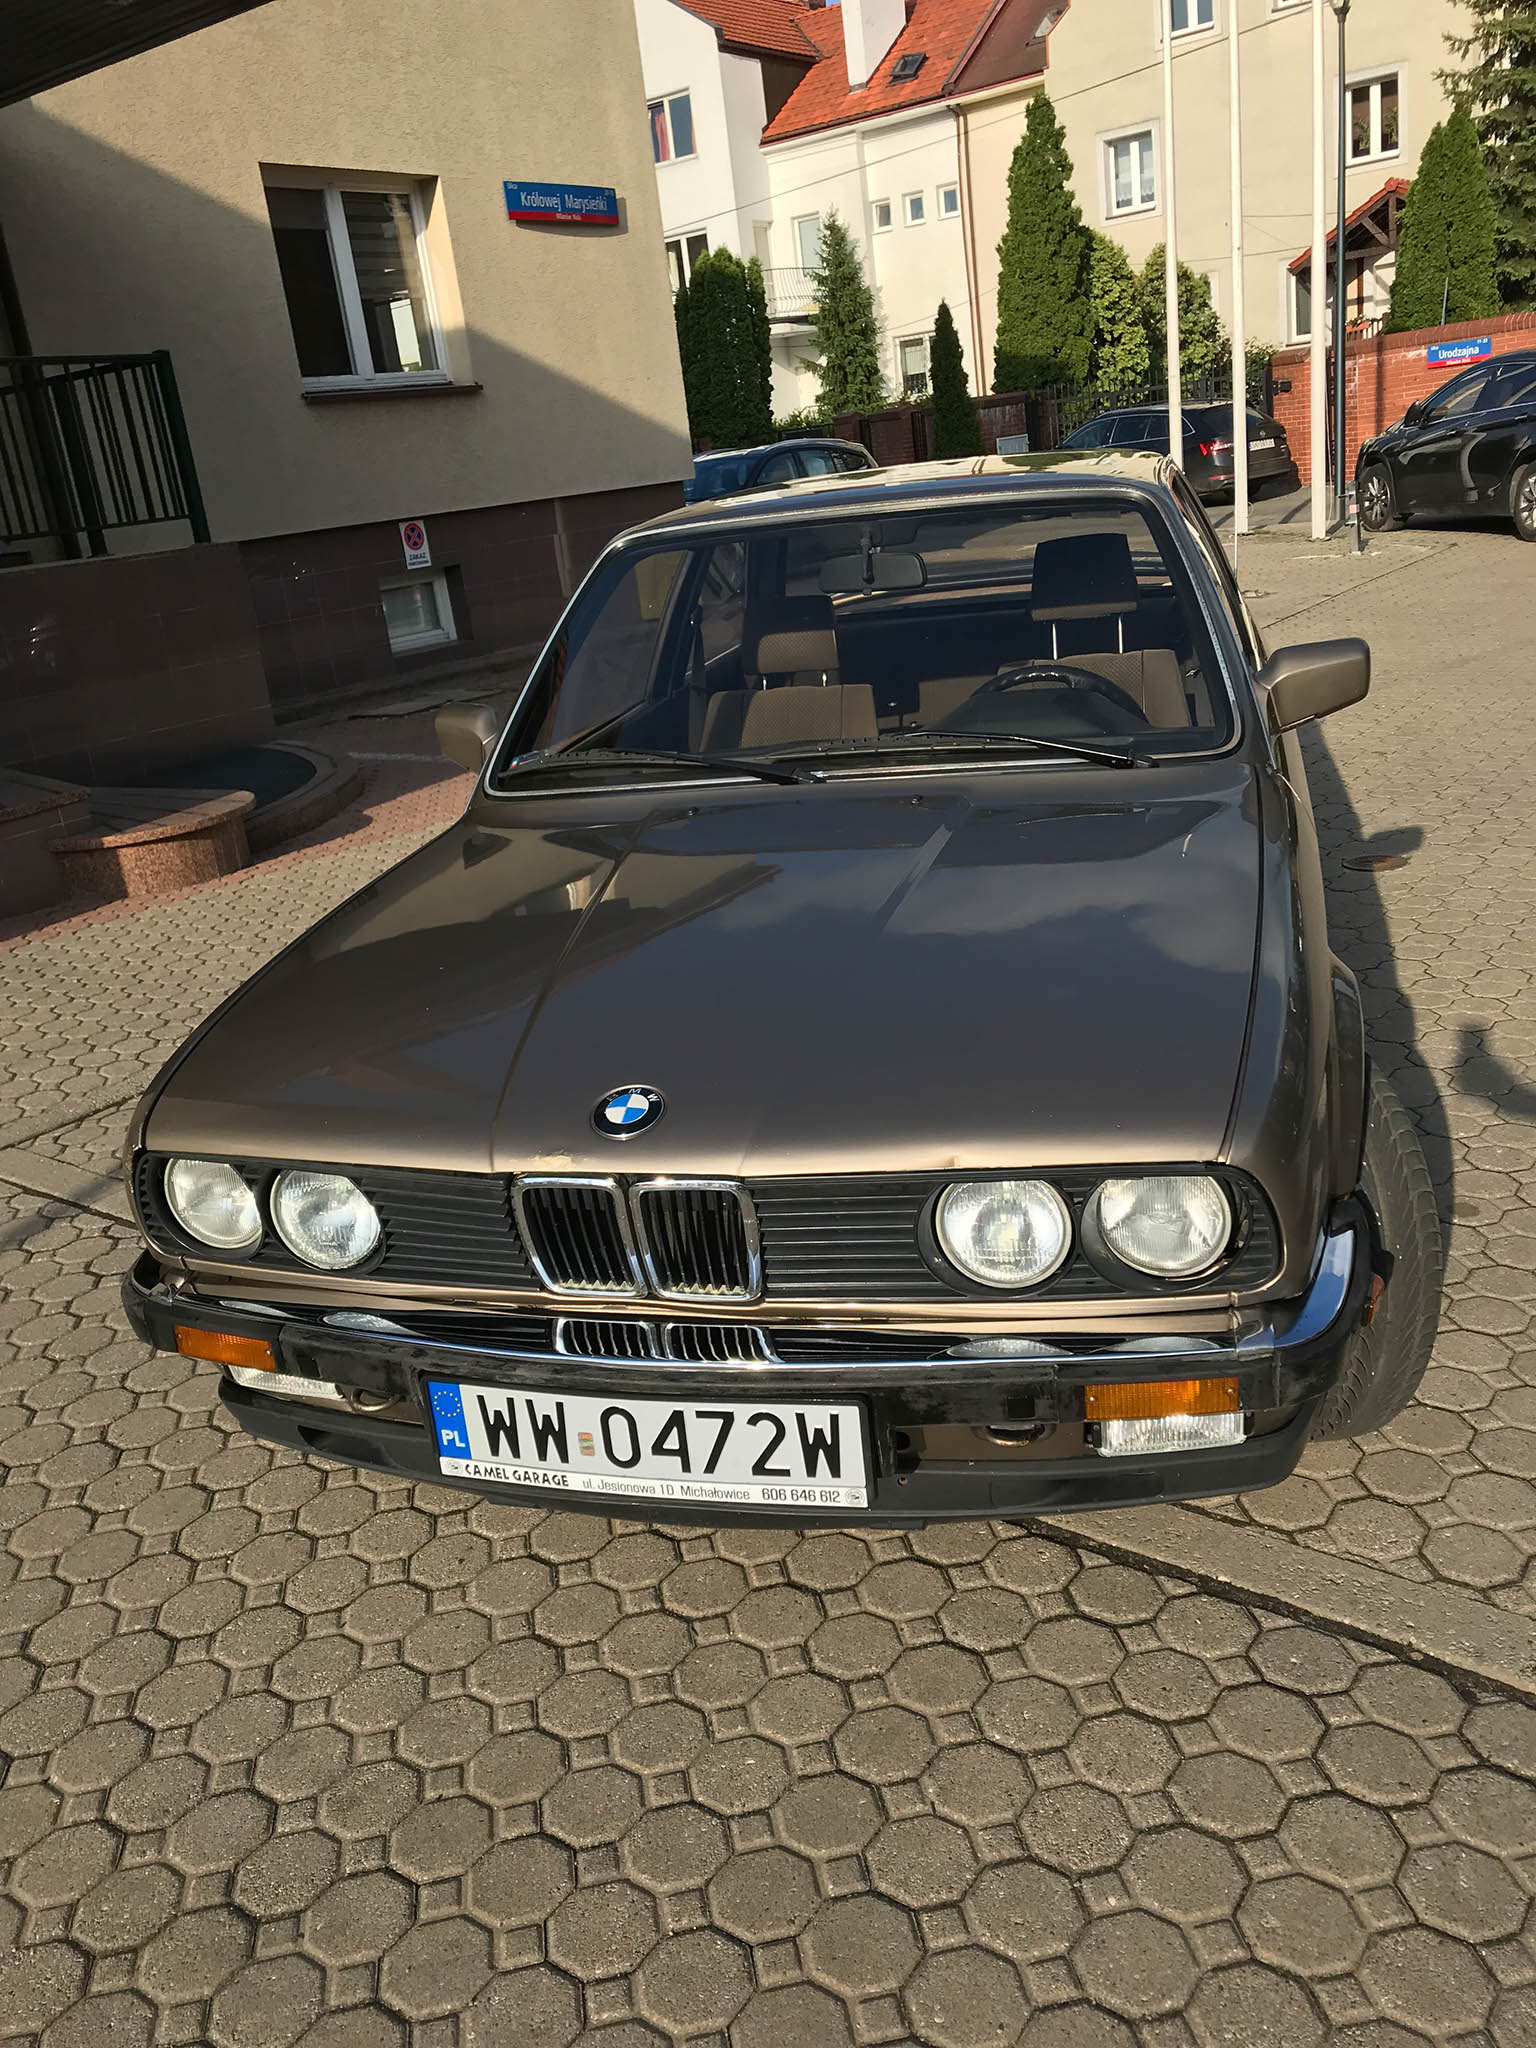 BMW 320i E30 1984 19500 PLN Warszawa Giełda klasyków